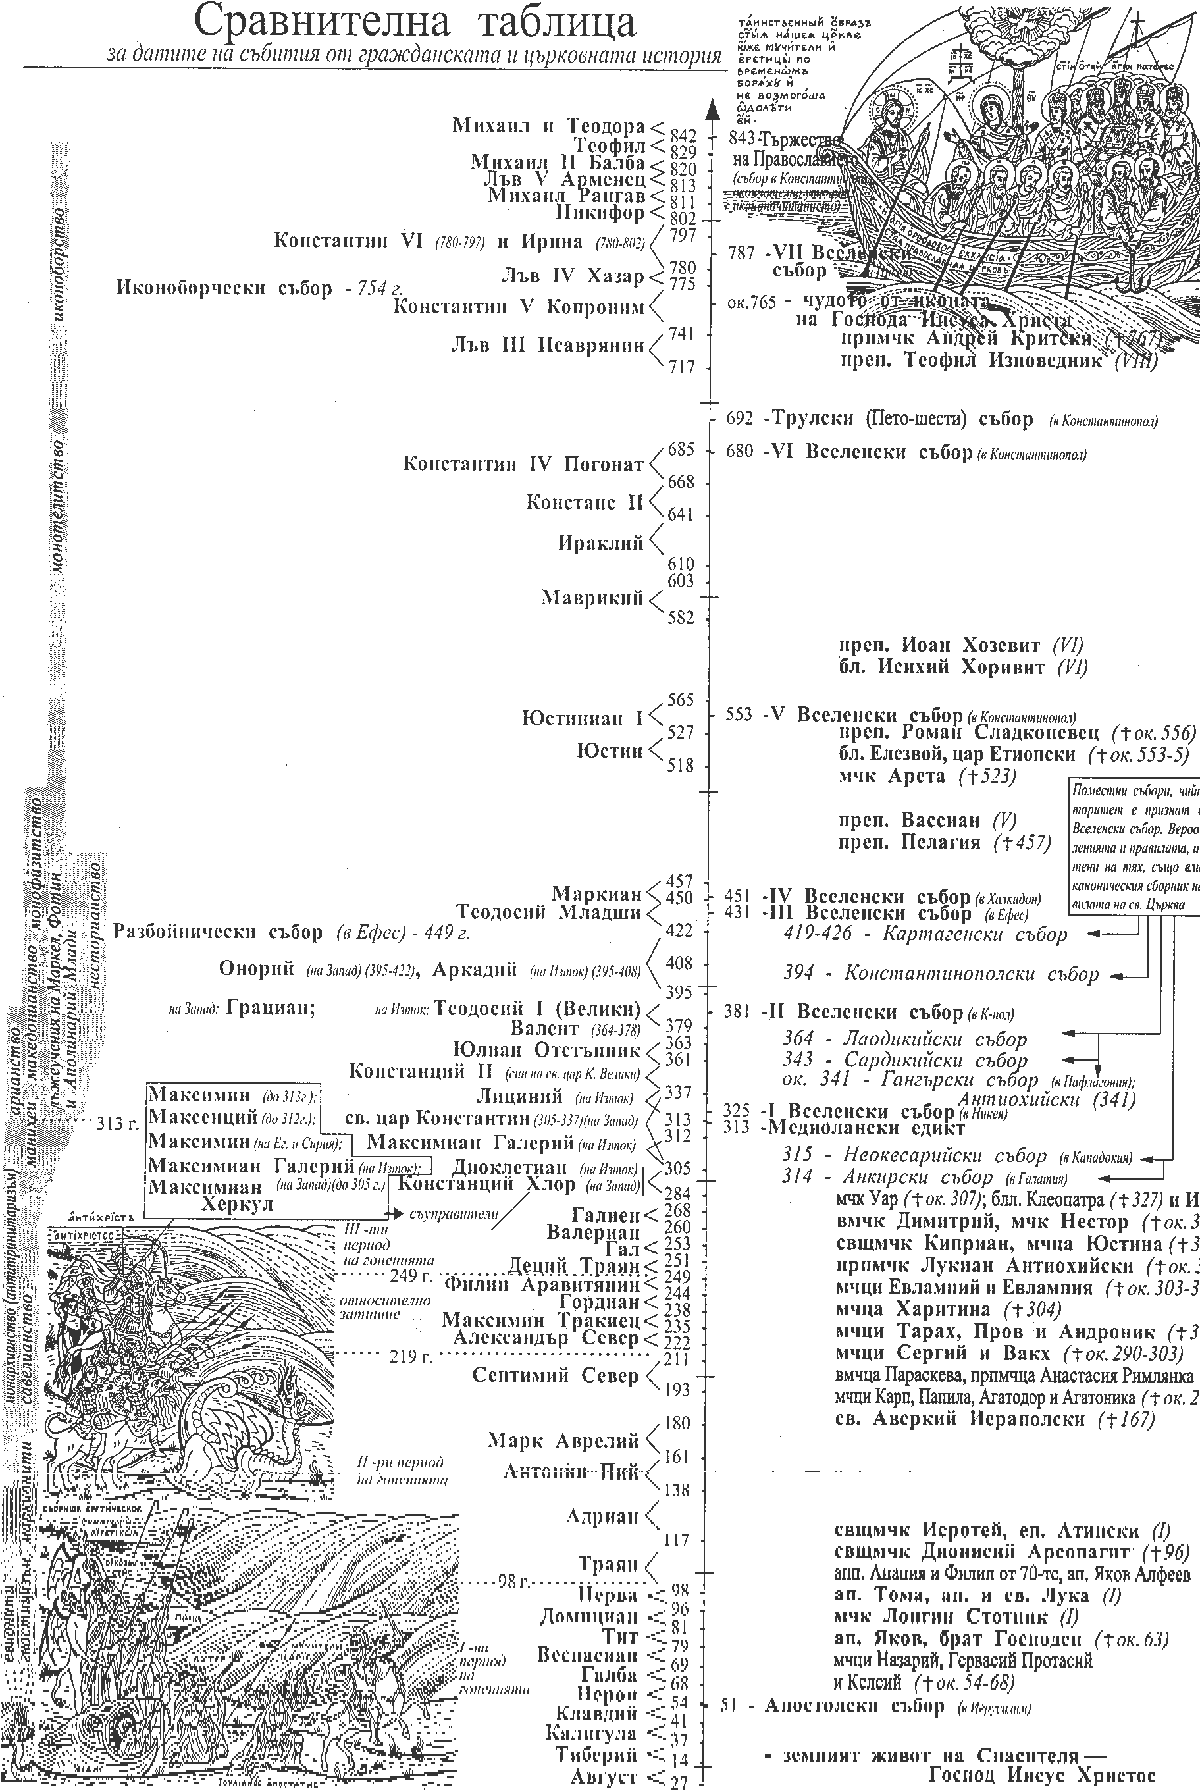 Сравнителна таблица за датите на събития от гражданската и църковната история